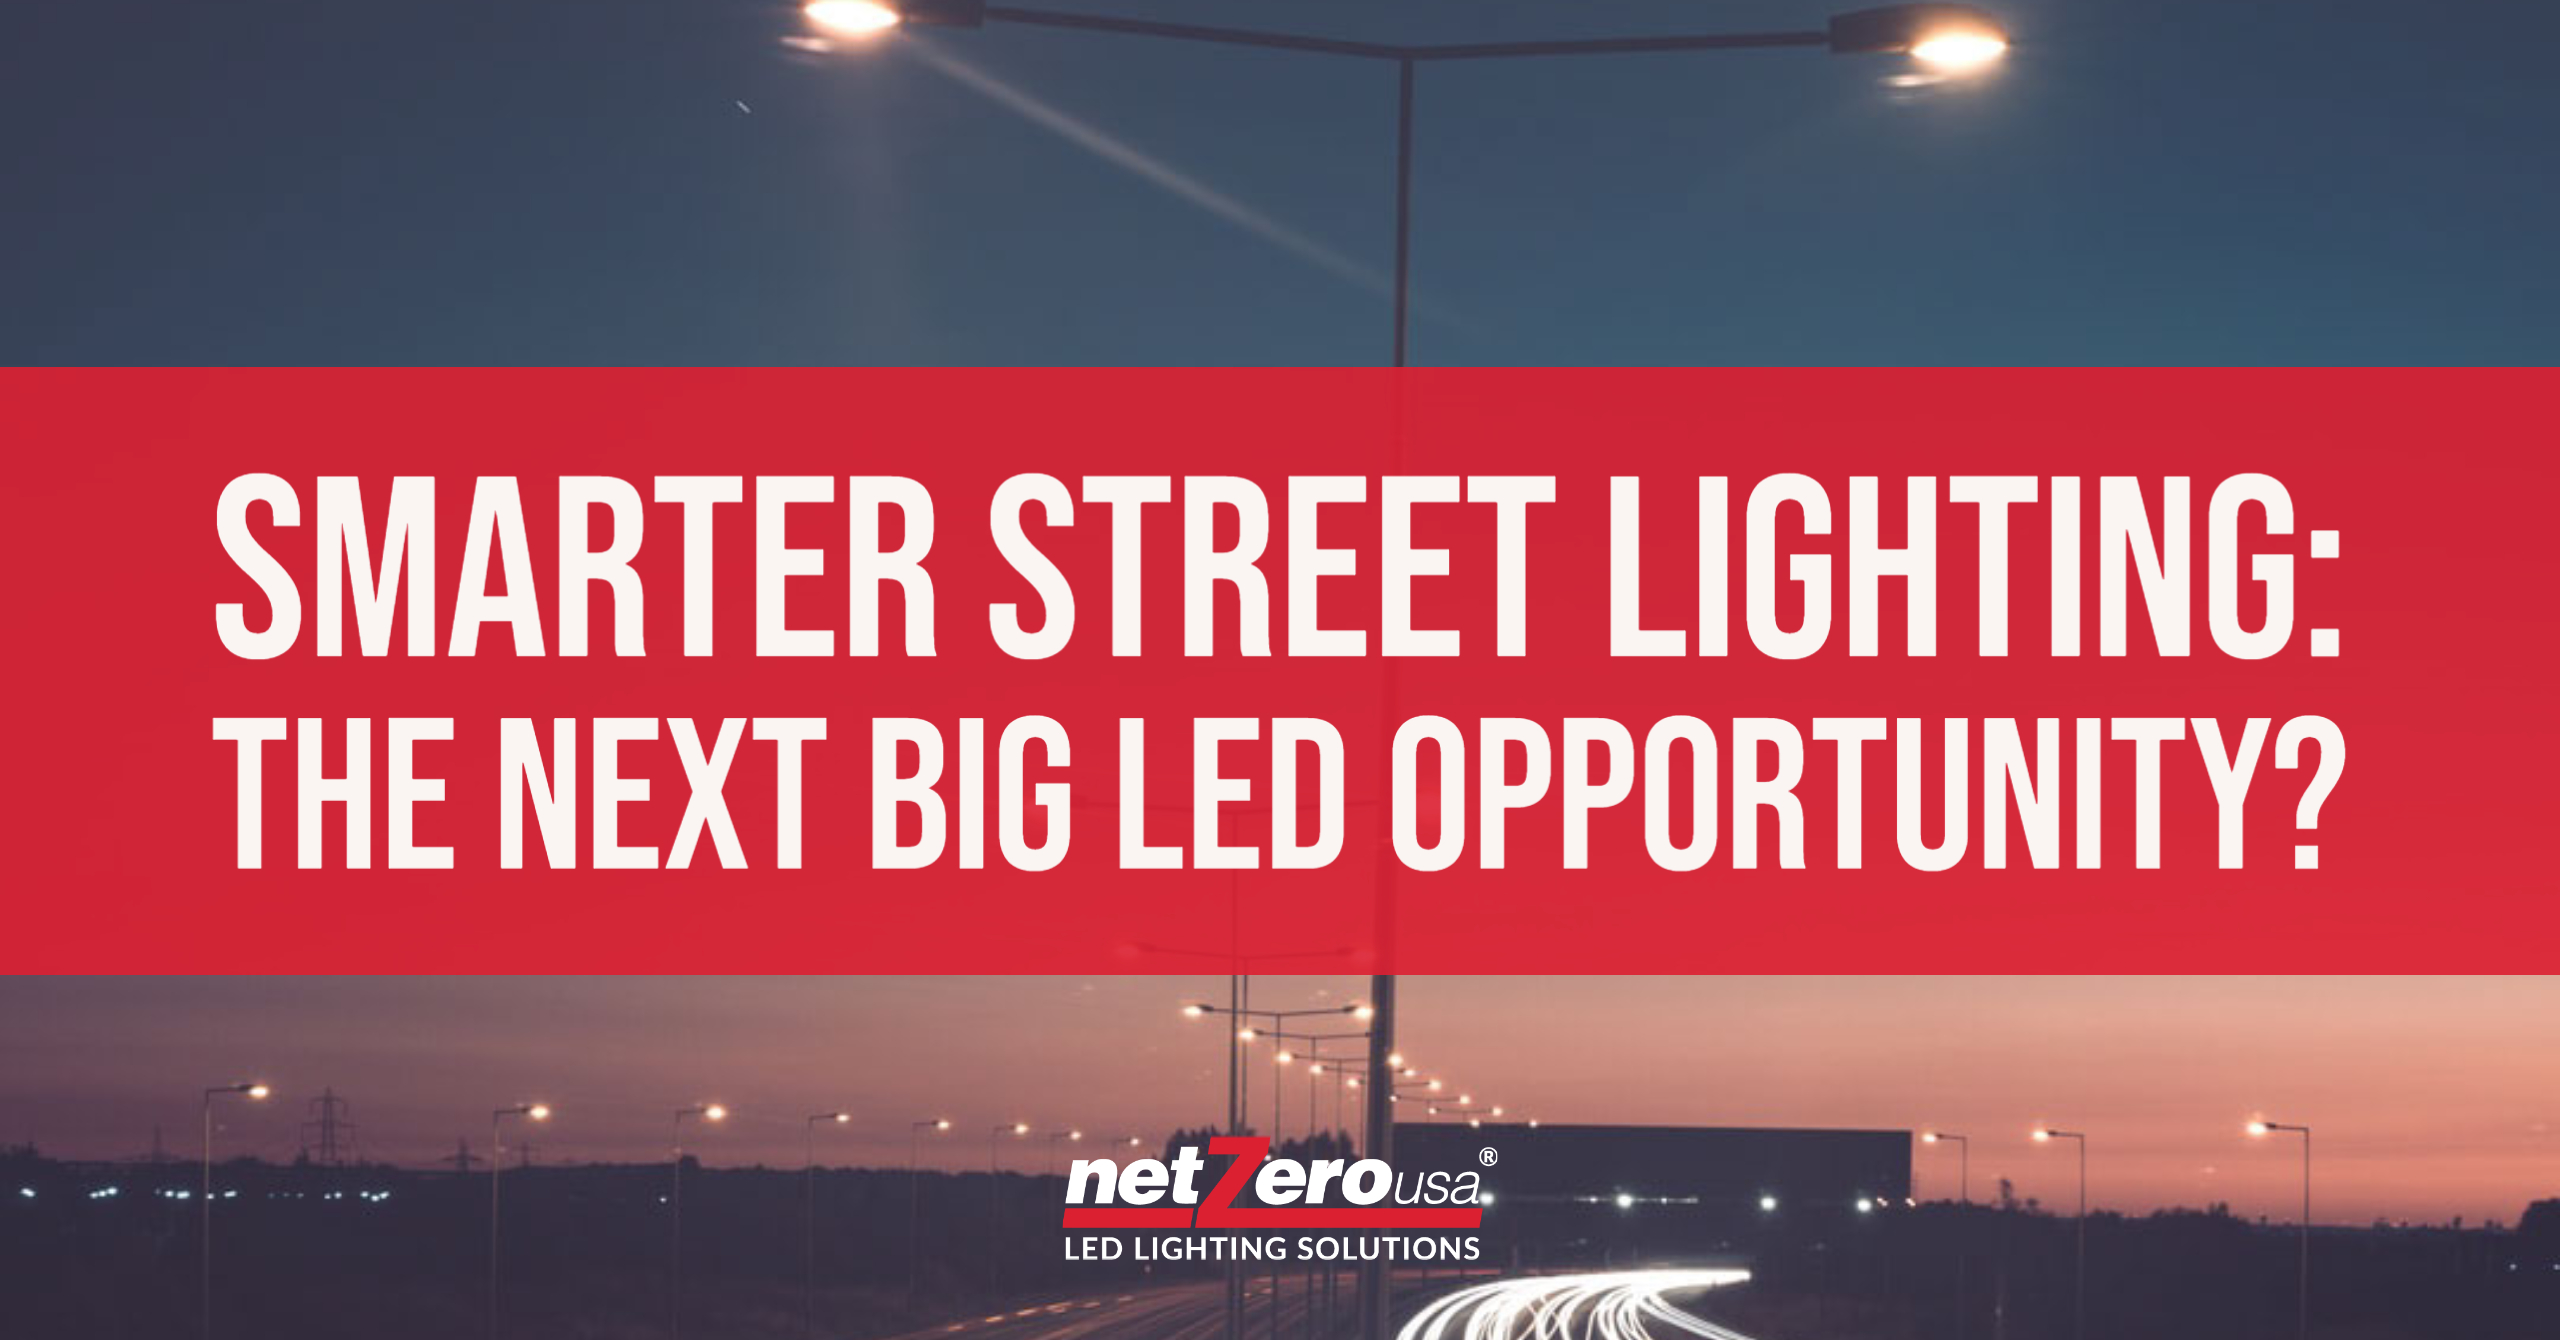 led-street-lighting-news